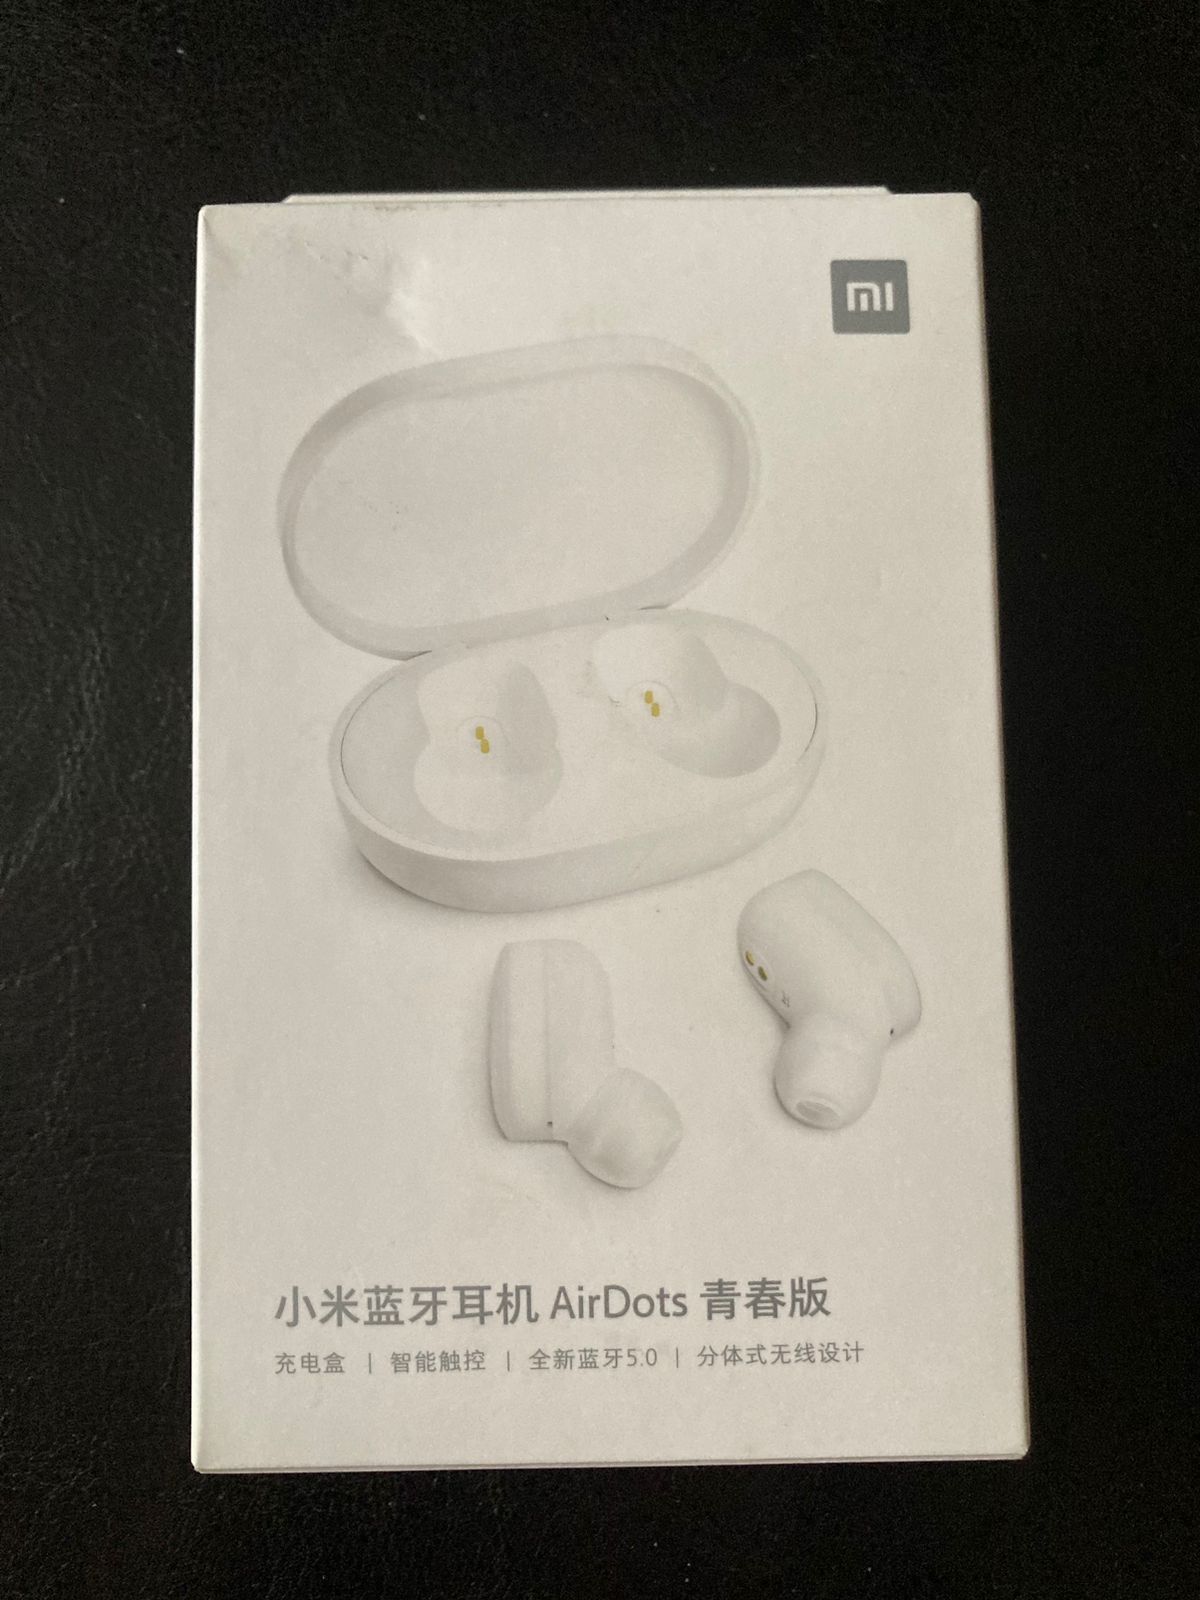 Беспроводные наушники Xiaomi AirDots